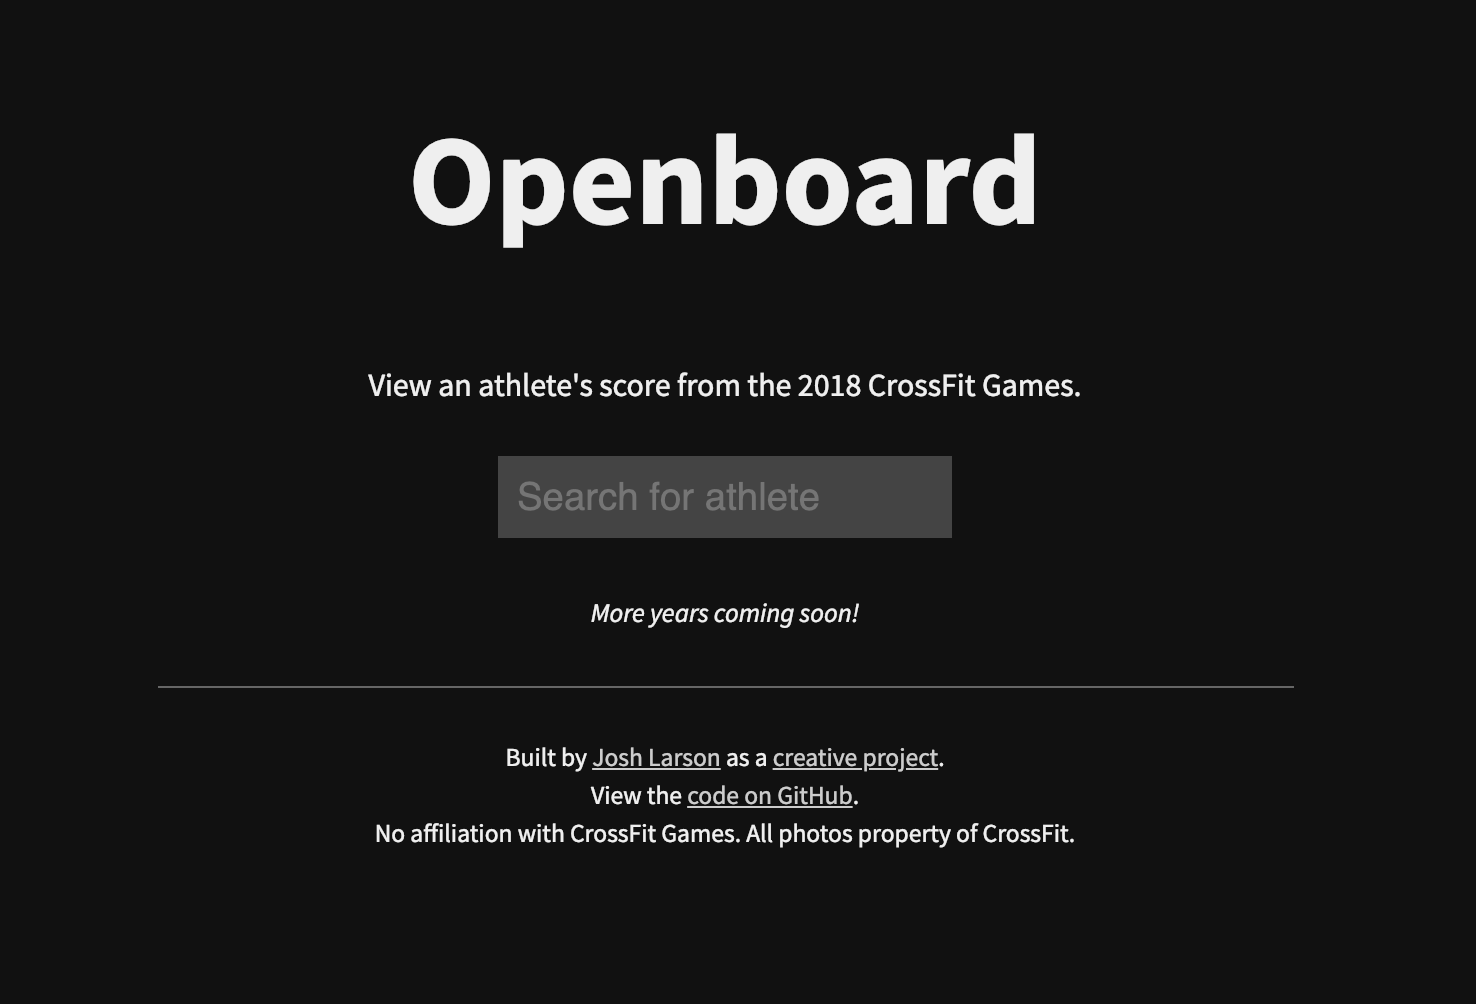 Openboard